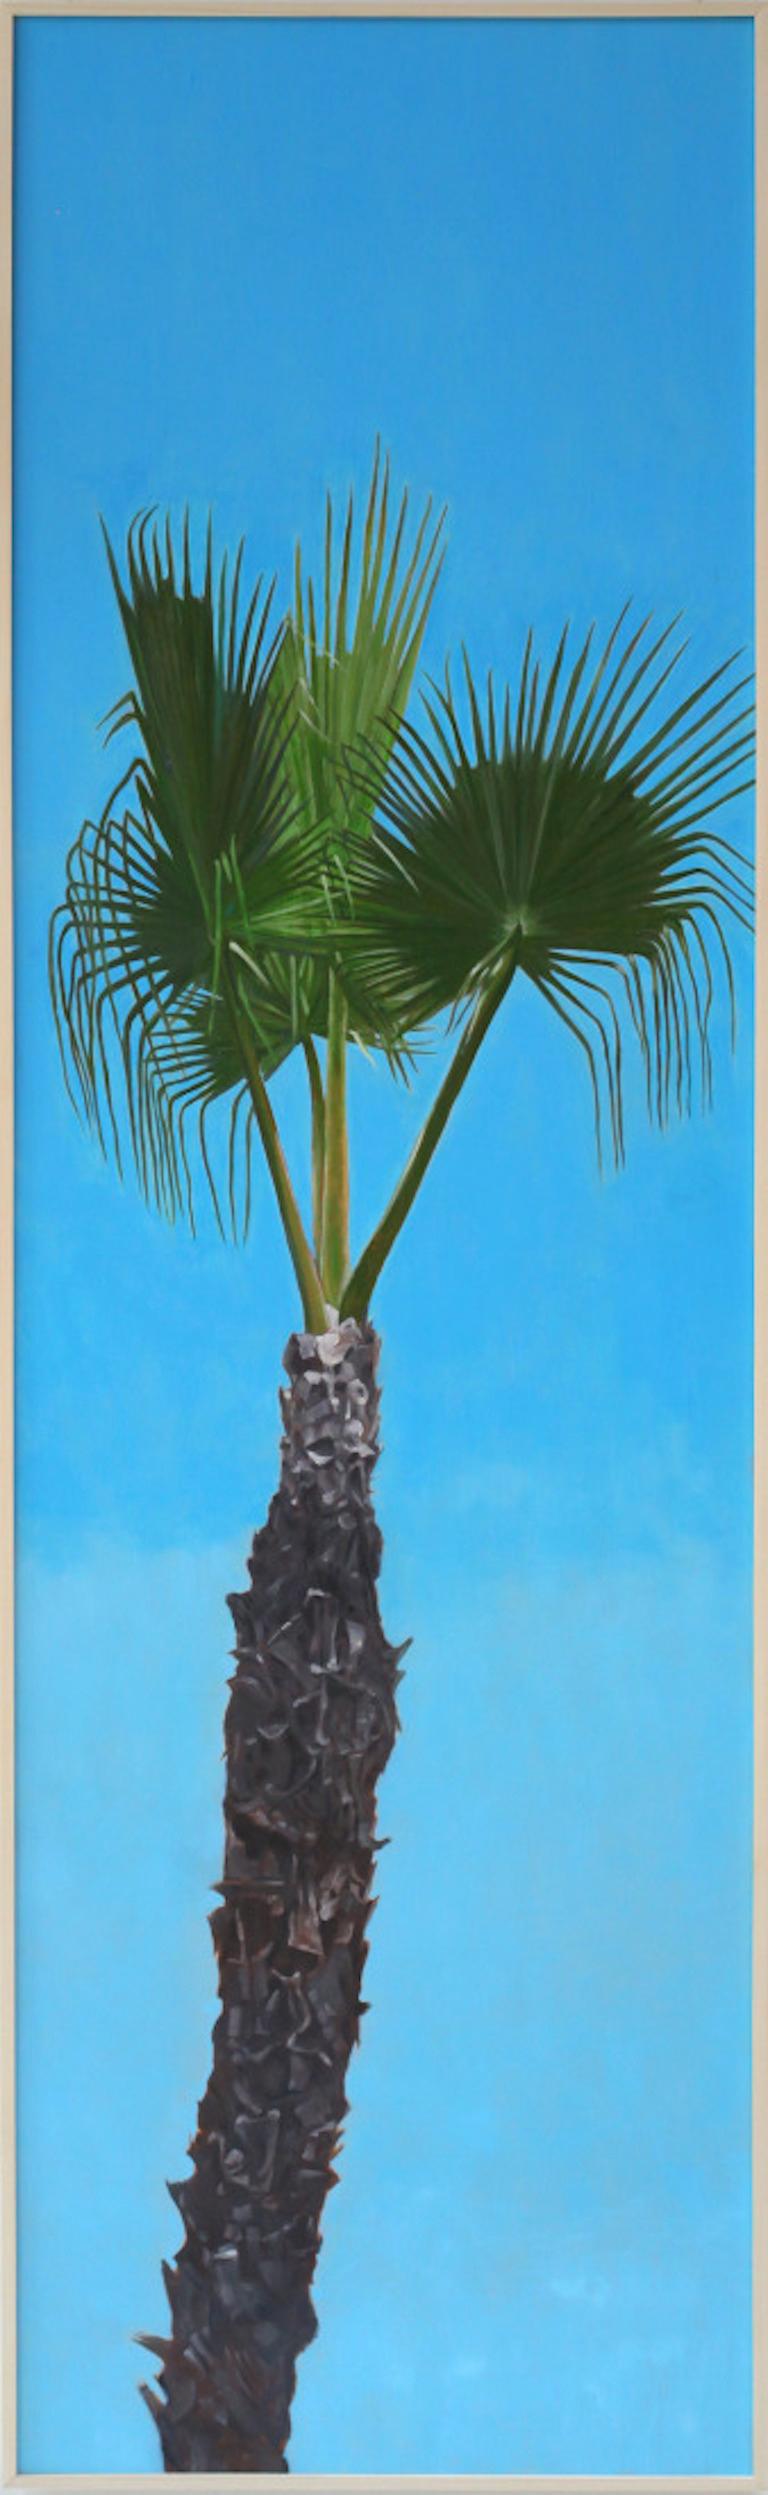 Perry Vàsquez Landscape Painting - Conceptual Realist Palm Tree Painting, "Oasis 1"